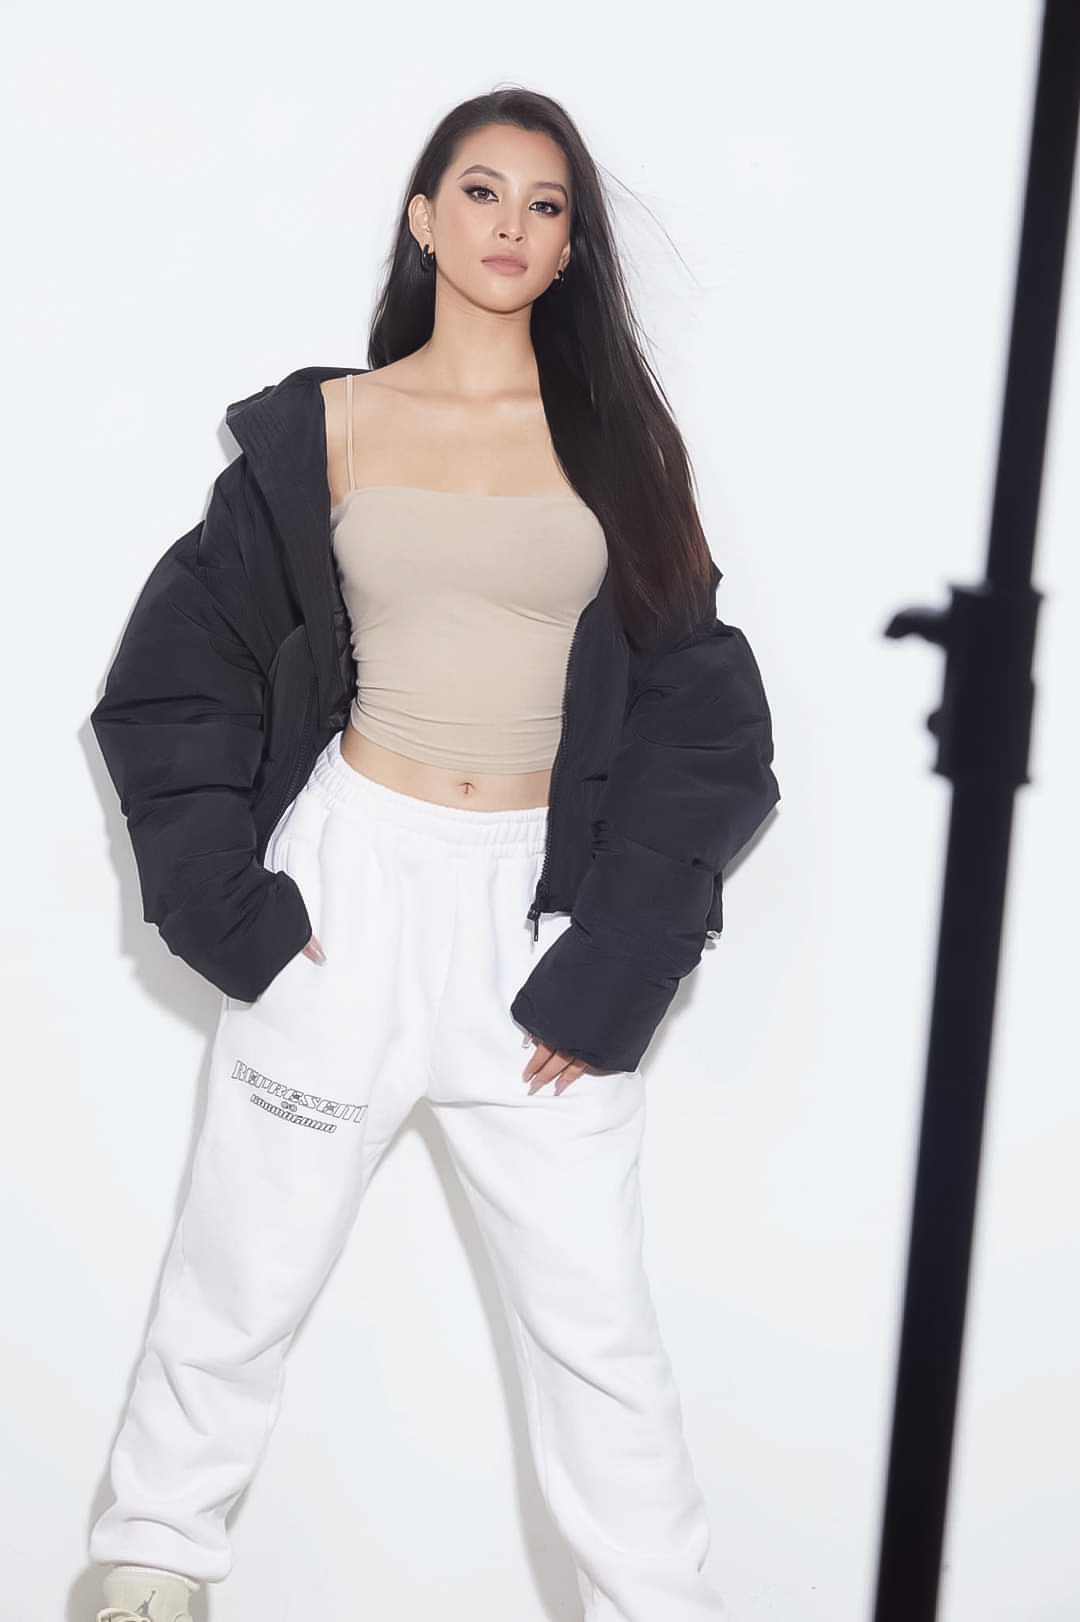 Với bộ ảnh cá tính 'cool ngầu', Tiểu Vy vẫn giữ nét đẹp quyến rũ với trang phục đậm style hip hop khi mix áo bomber jacket , quần jogger trắng.